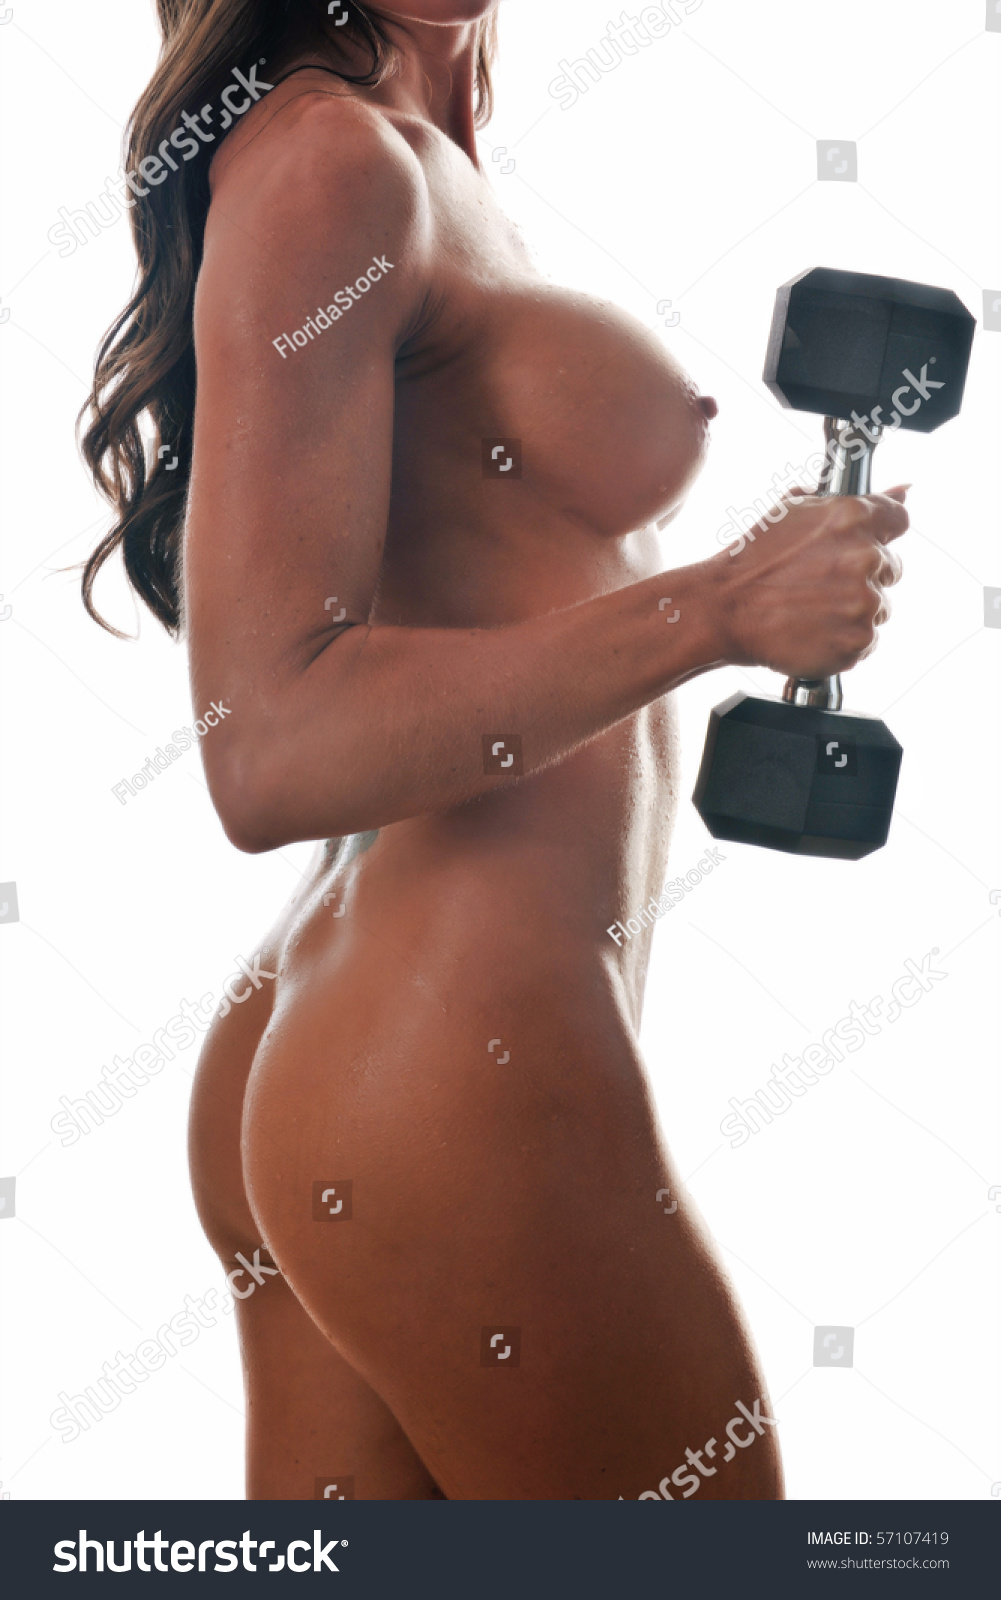 Fitness-model Pics - SEX.COM